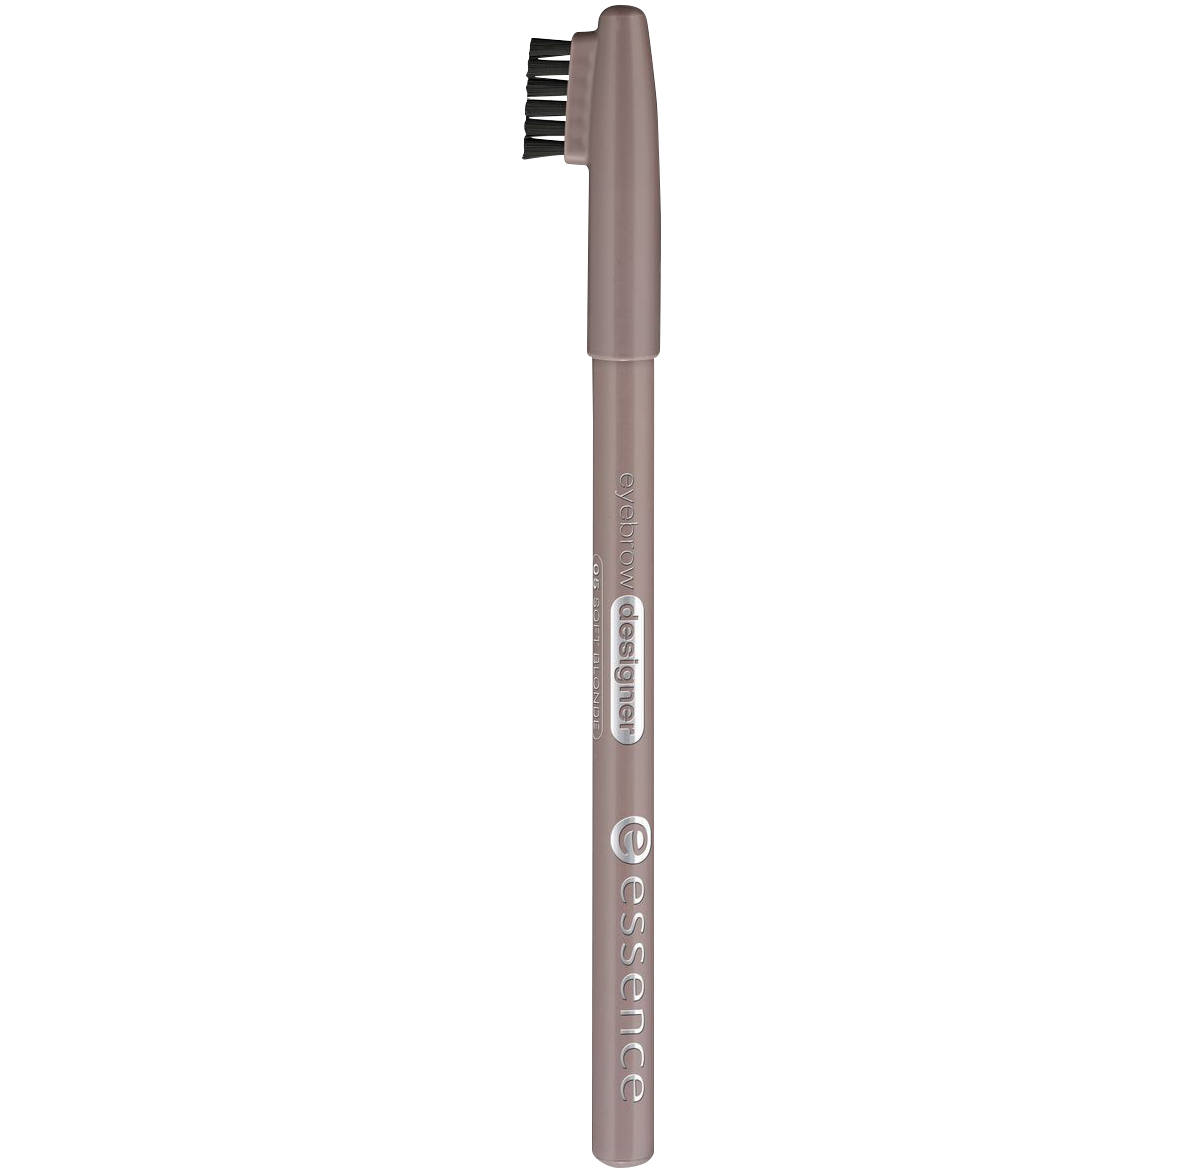 Карандаш для бровей 05 Essence Eyebrow, 1 гр карандаш для бровей eyebrow designer lápiz de cejas essence 04 blonde